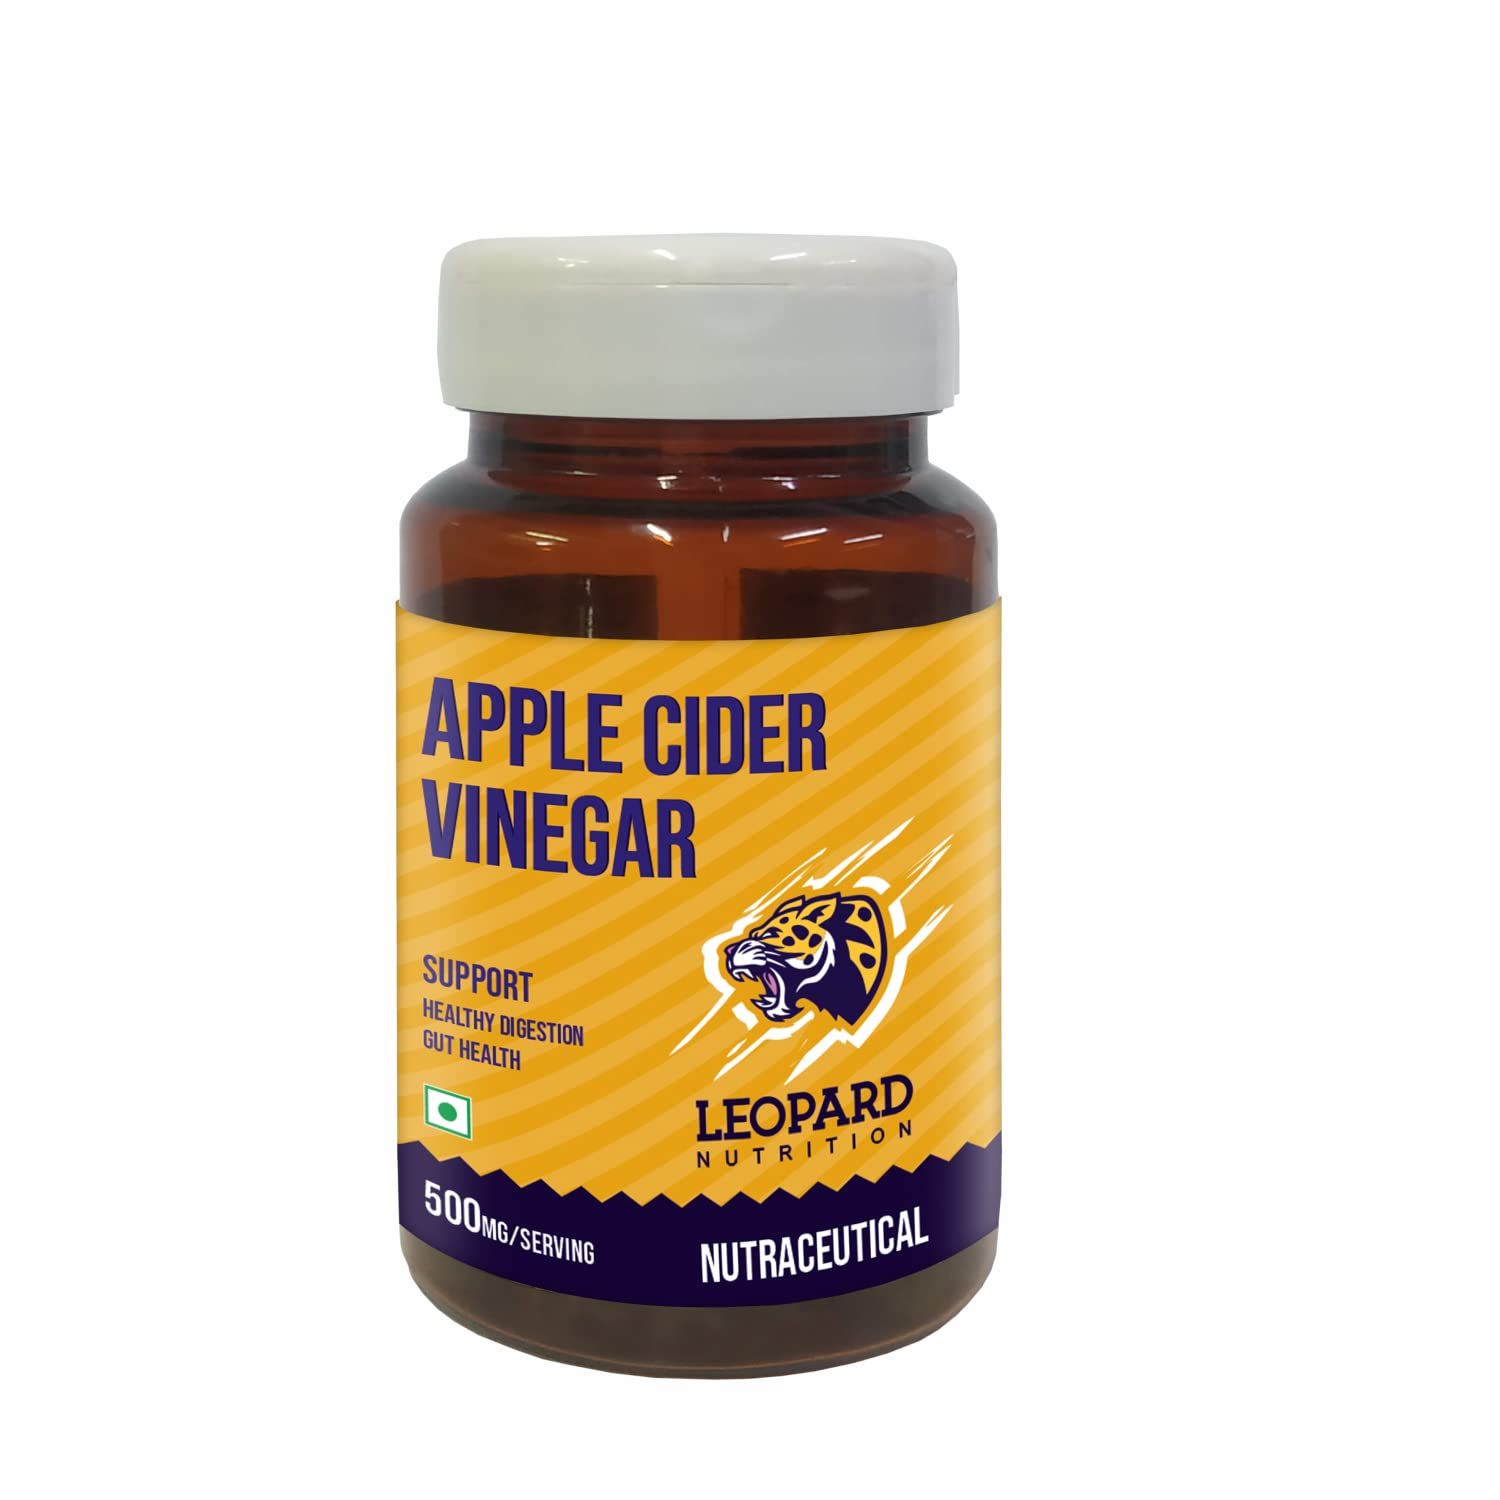 Leopard Nutrition Apple Cider Vinegar Image